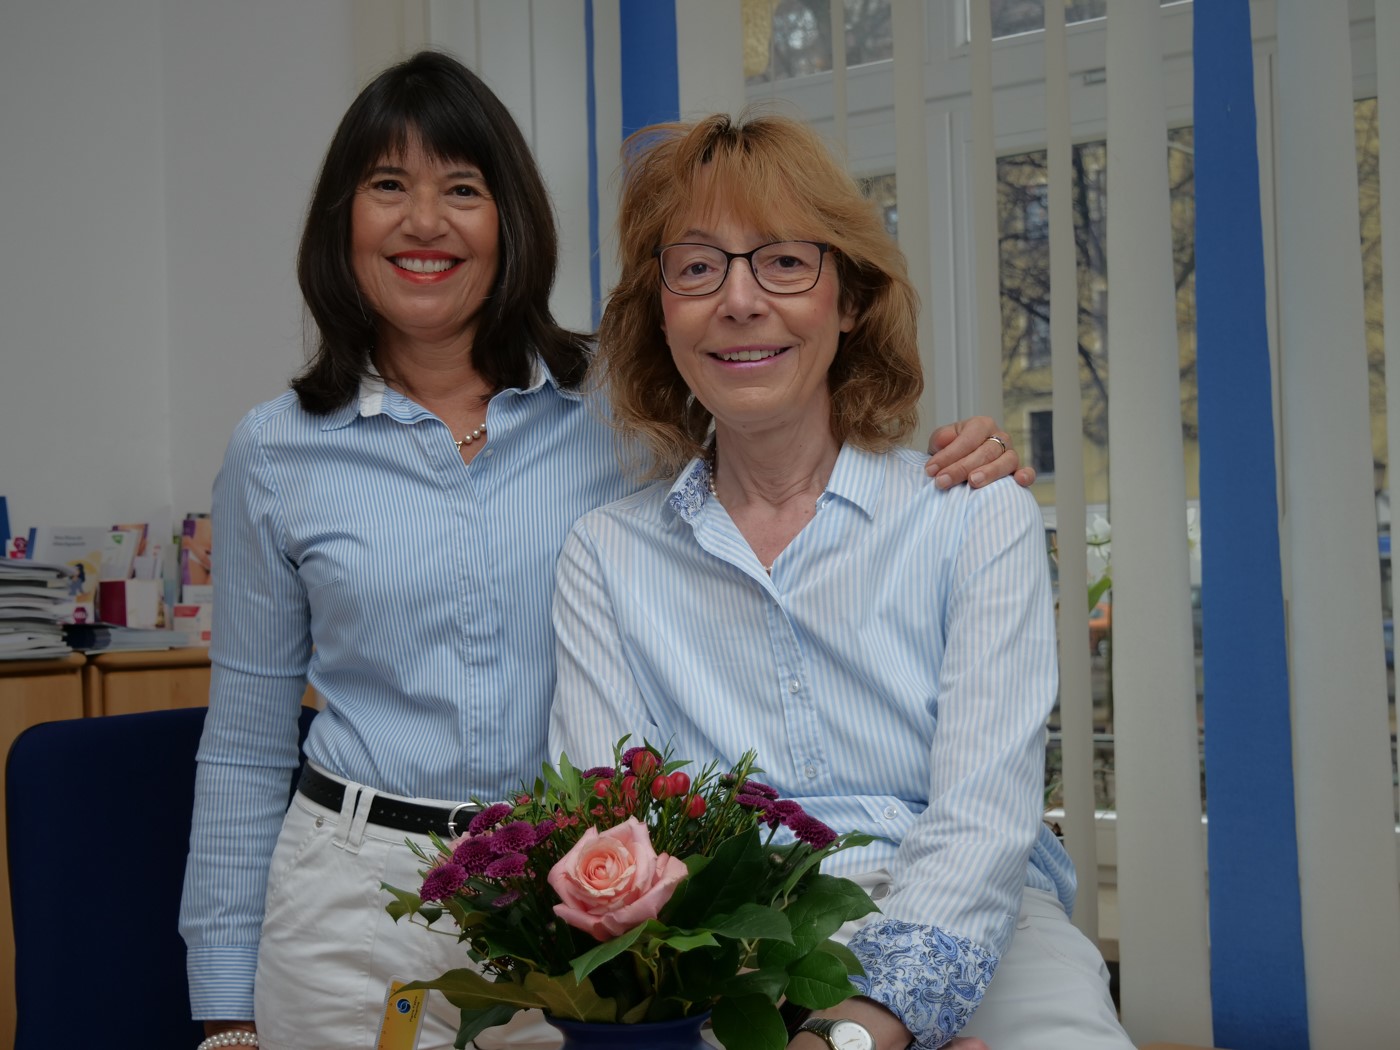 Dr. Lioba Rüßmann & Dr. Jennifer Roder